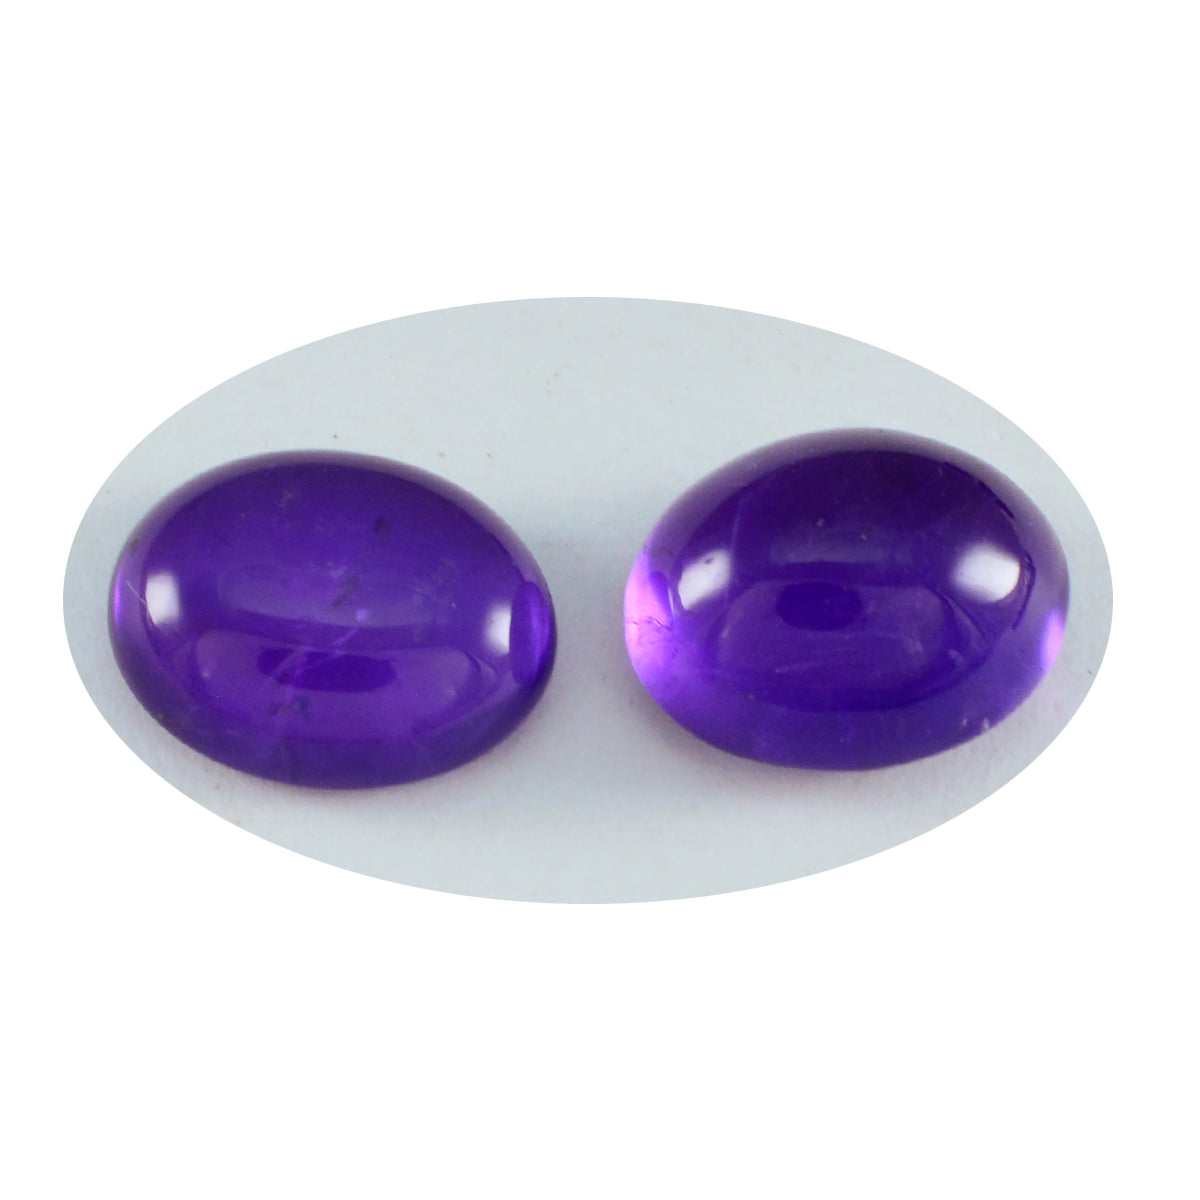 Riyogems 1 pieza cabujón de amatista púrpura 9X18mm forma ovalada gema de calidad atractiva